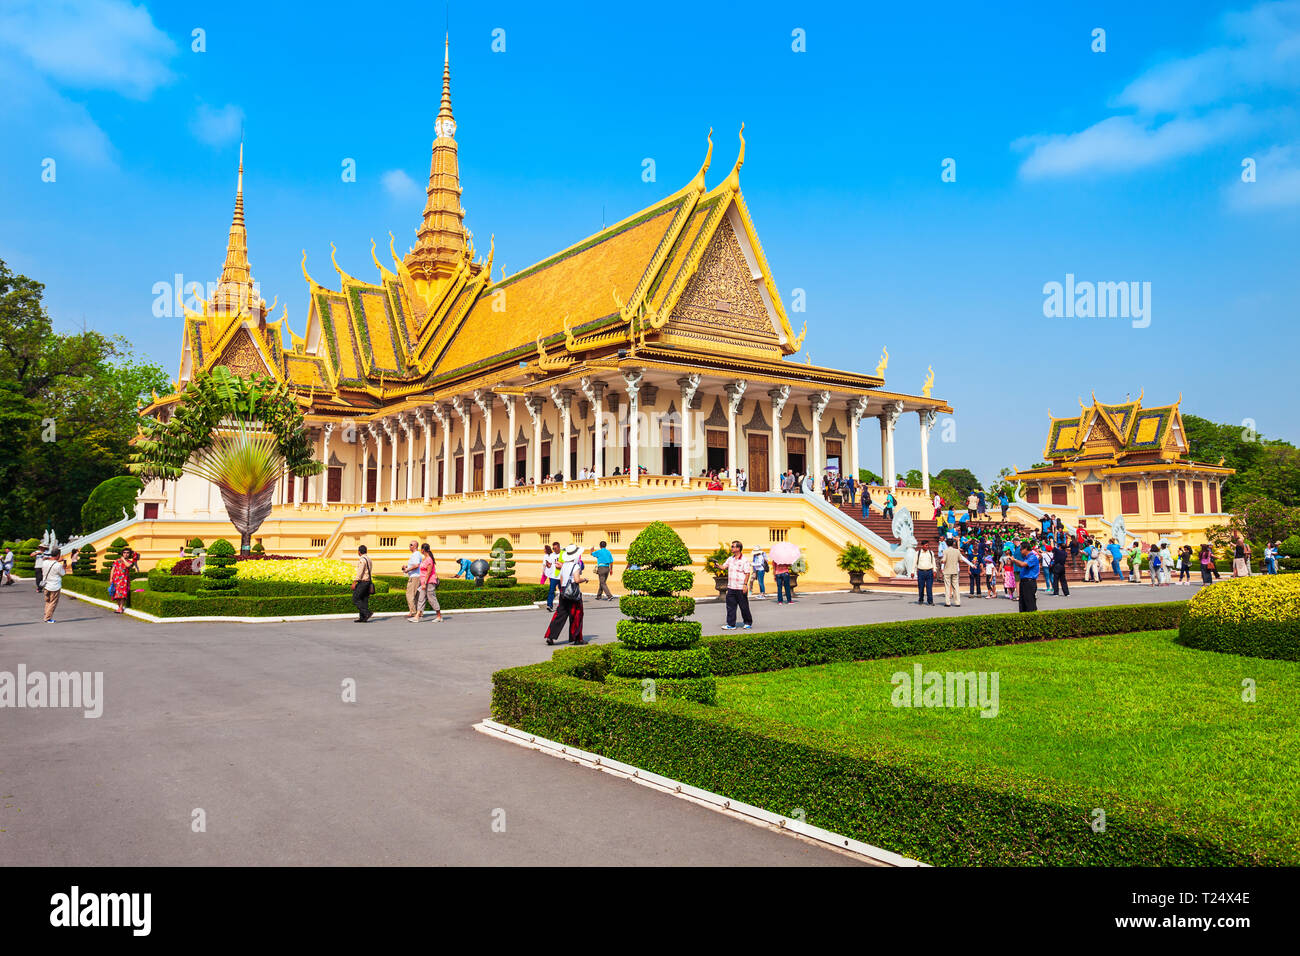 PHNOM PENH, Kambodscha - 24. MÄRZ 2018: Der Königliche Palast, die Königliche Residenz des Königs von Kambodscha in Phnom Penh in Kambodscha Stockfoto